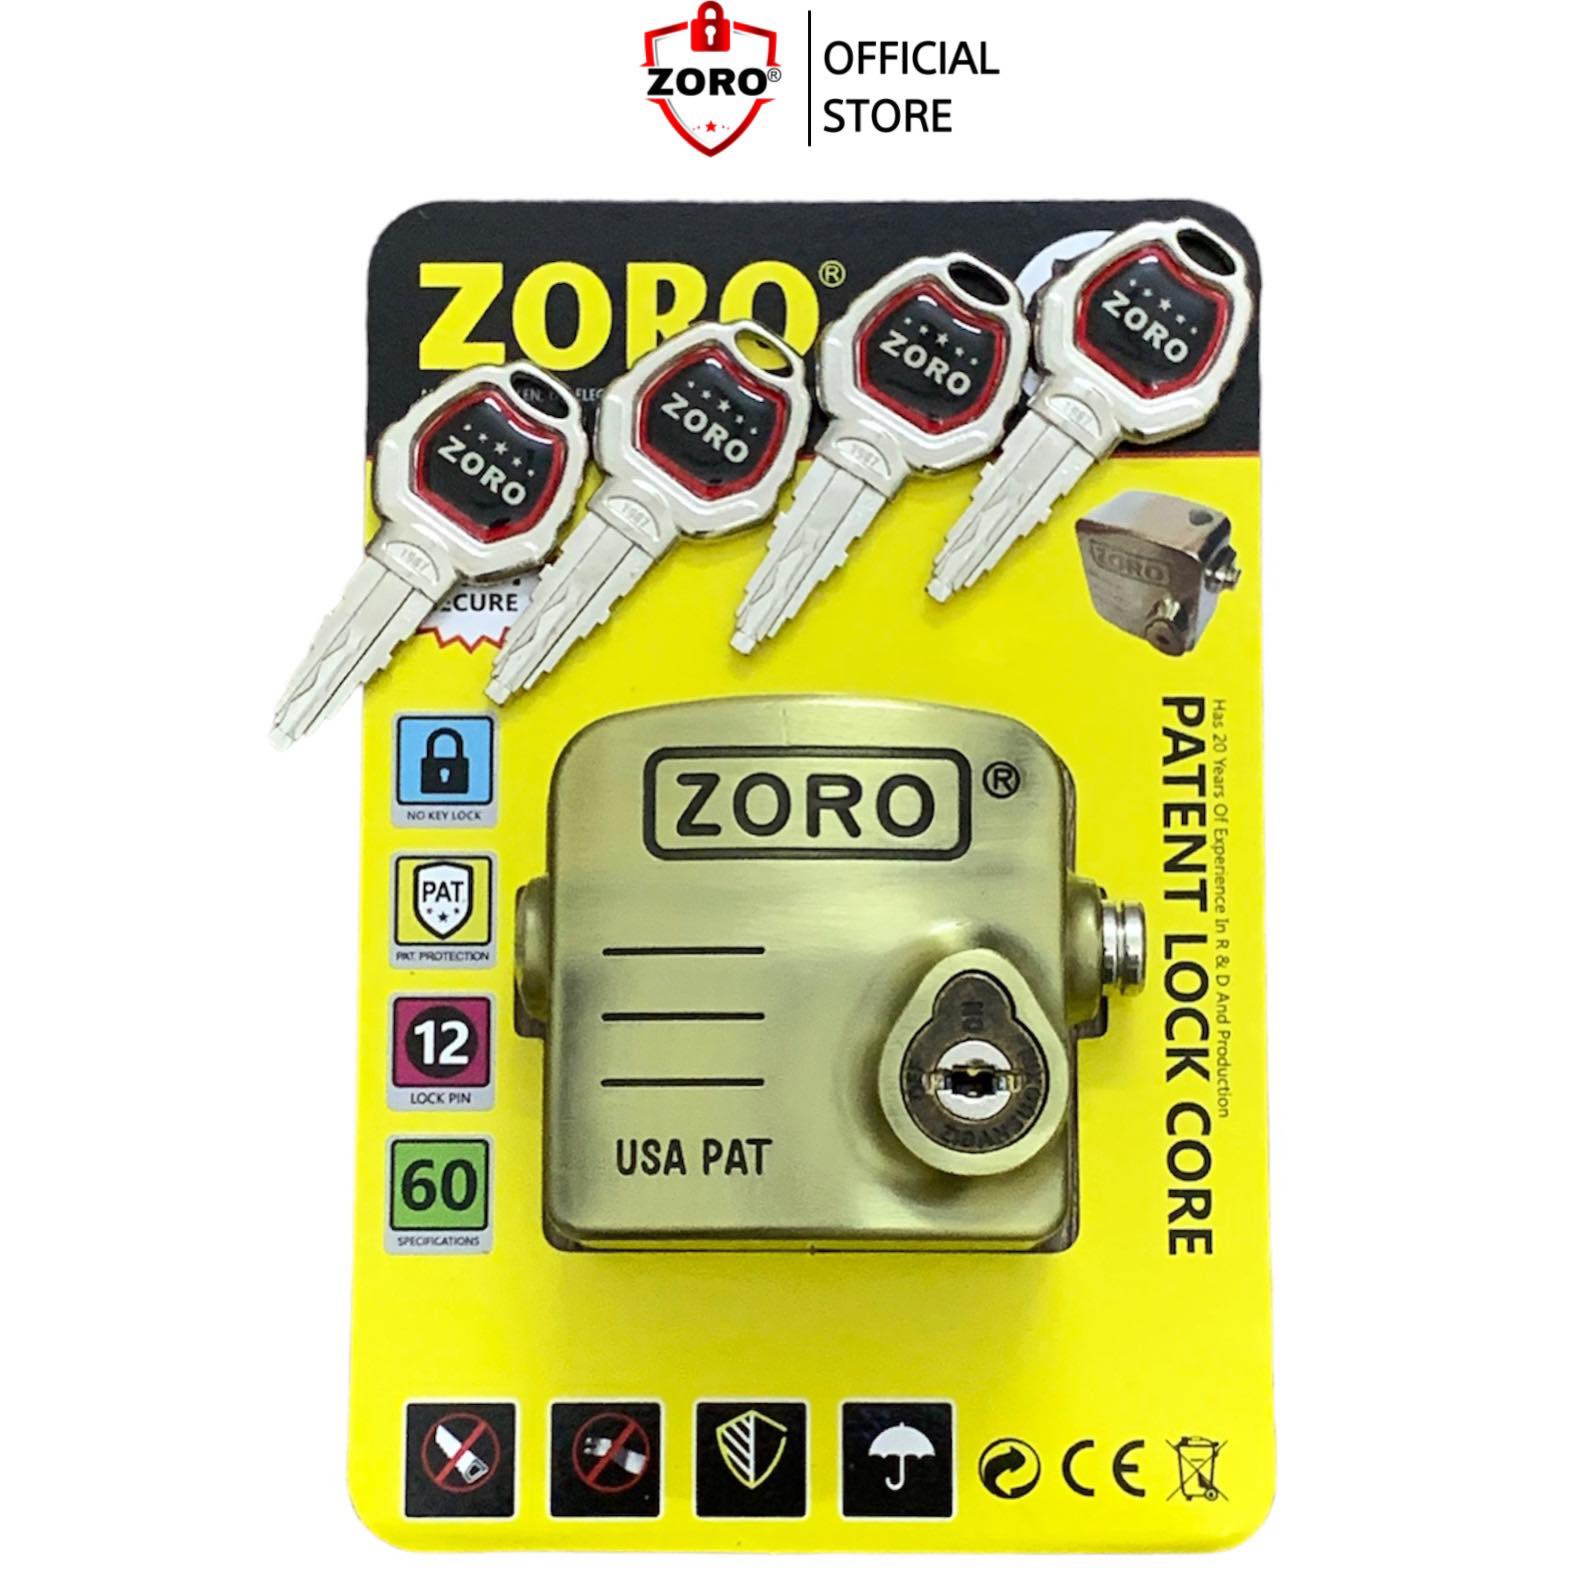 ổ khóa chụp chống cắt toàn diện ZORO,công nghệ Mỹ,bảo vệ pát cửa